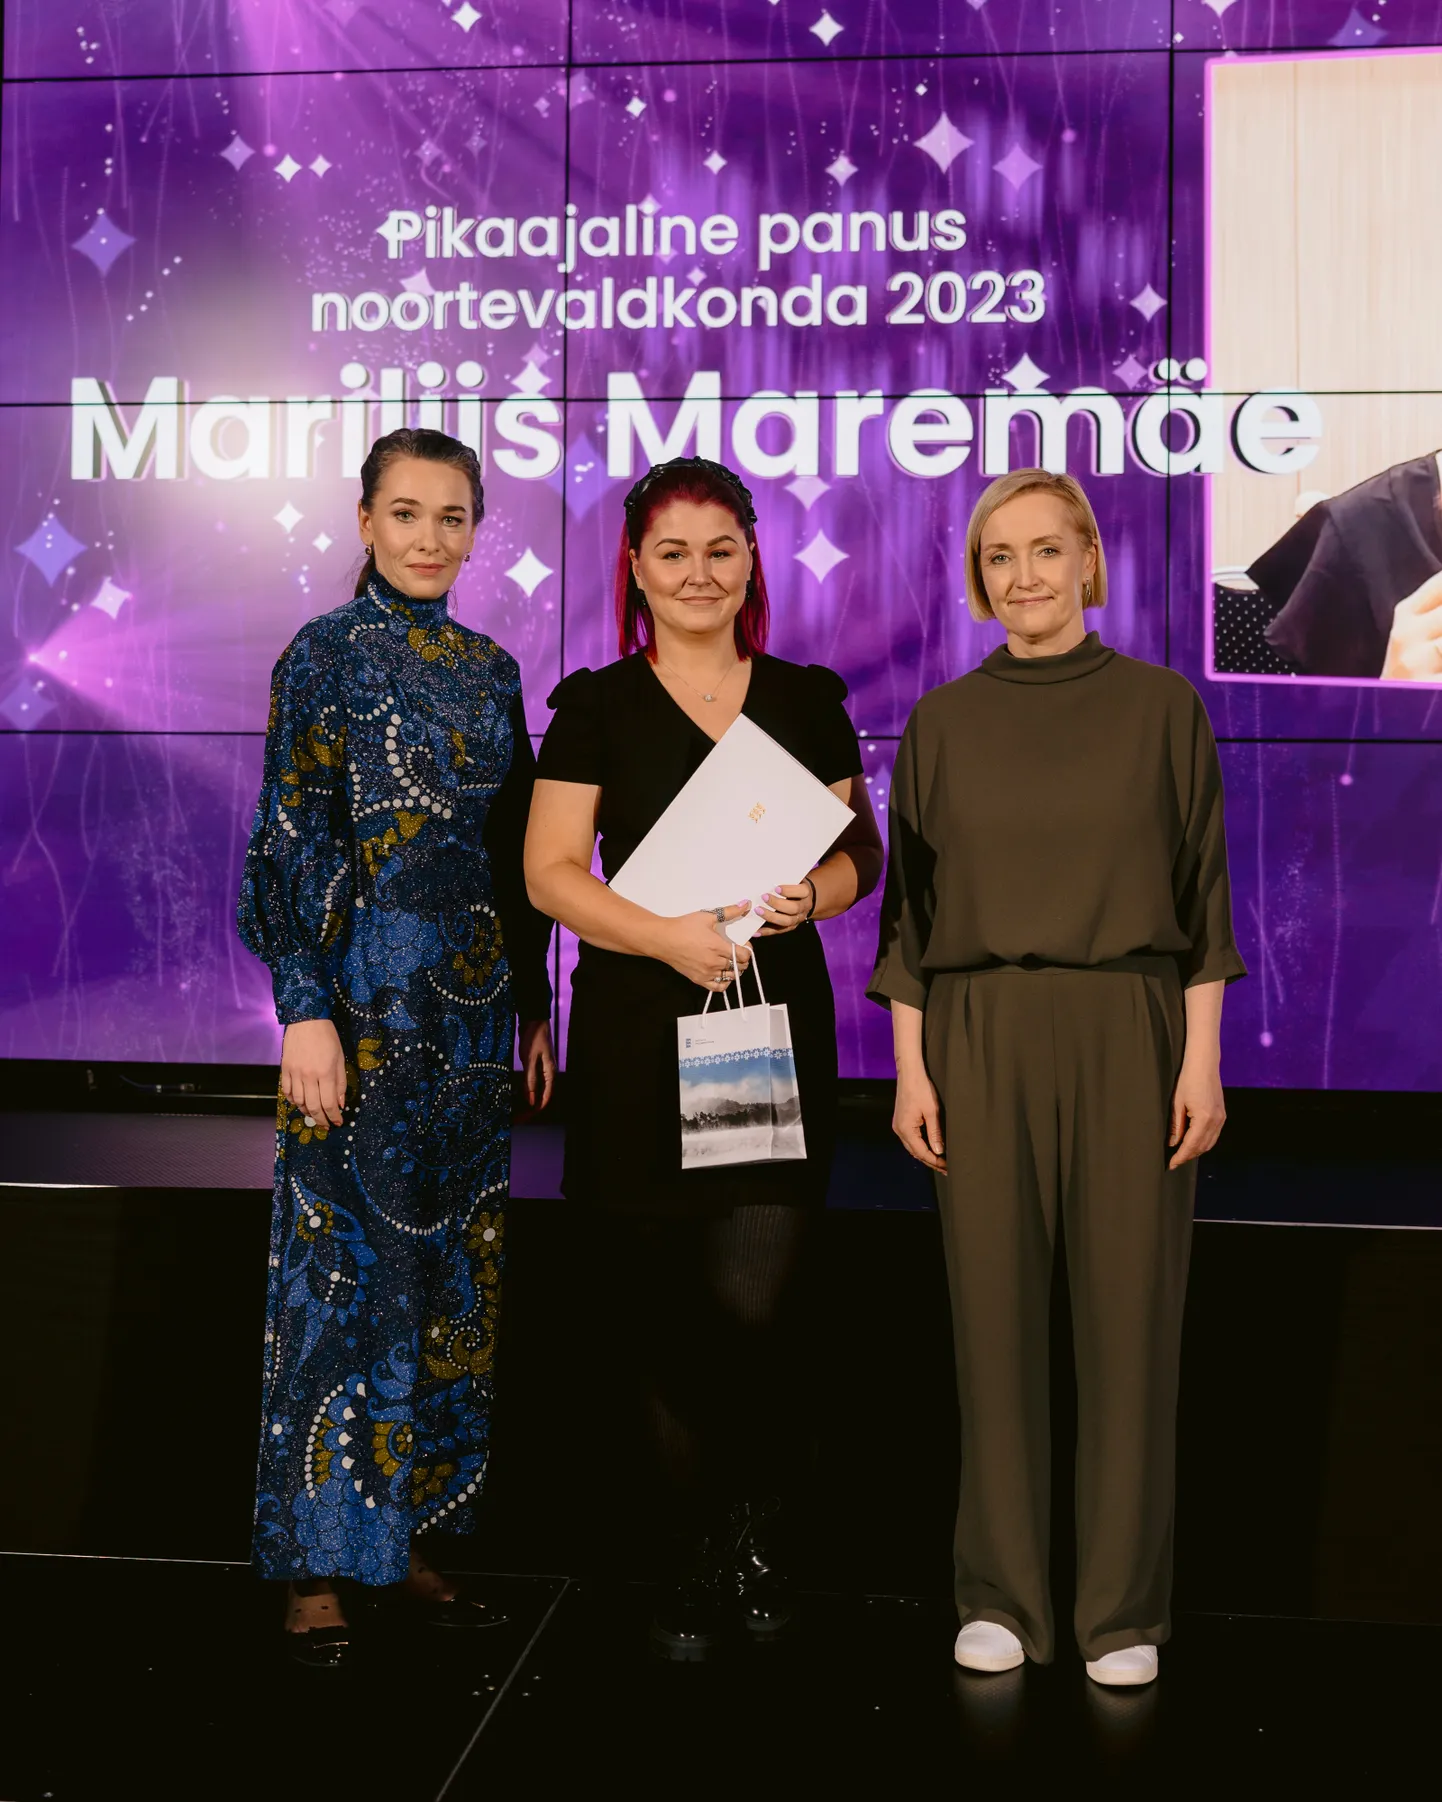 Mariliis Maremäe sai tunnustuse pikaajalise panuse eest noortevaldkonda. Pildil(vasakult) teadlane Riin Tamm, Mariliis Maremäe, haridus- ja teadusminister Kristina Kallas.